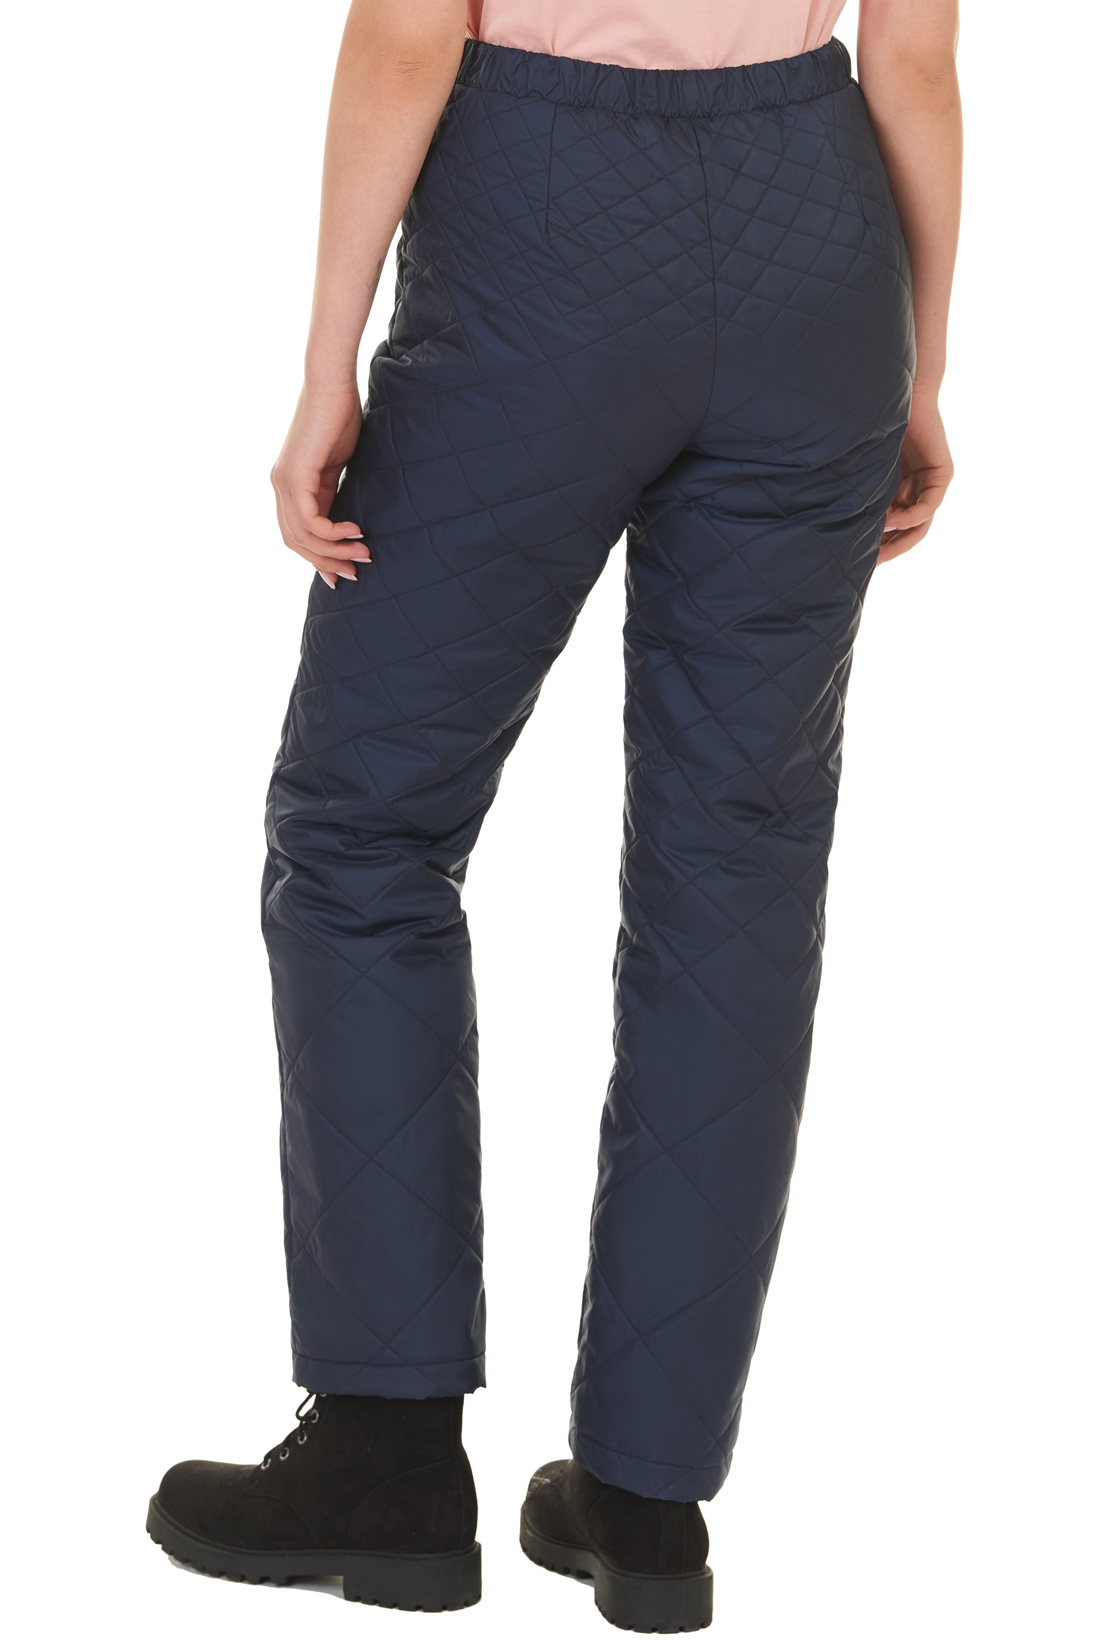 Утеплённые брюки на молнии (арт. baon B297506), размер XS, цвет синий Утеплённые брюки на молнии (арт. baon B297506) - фото 2